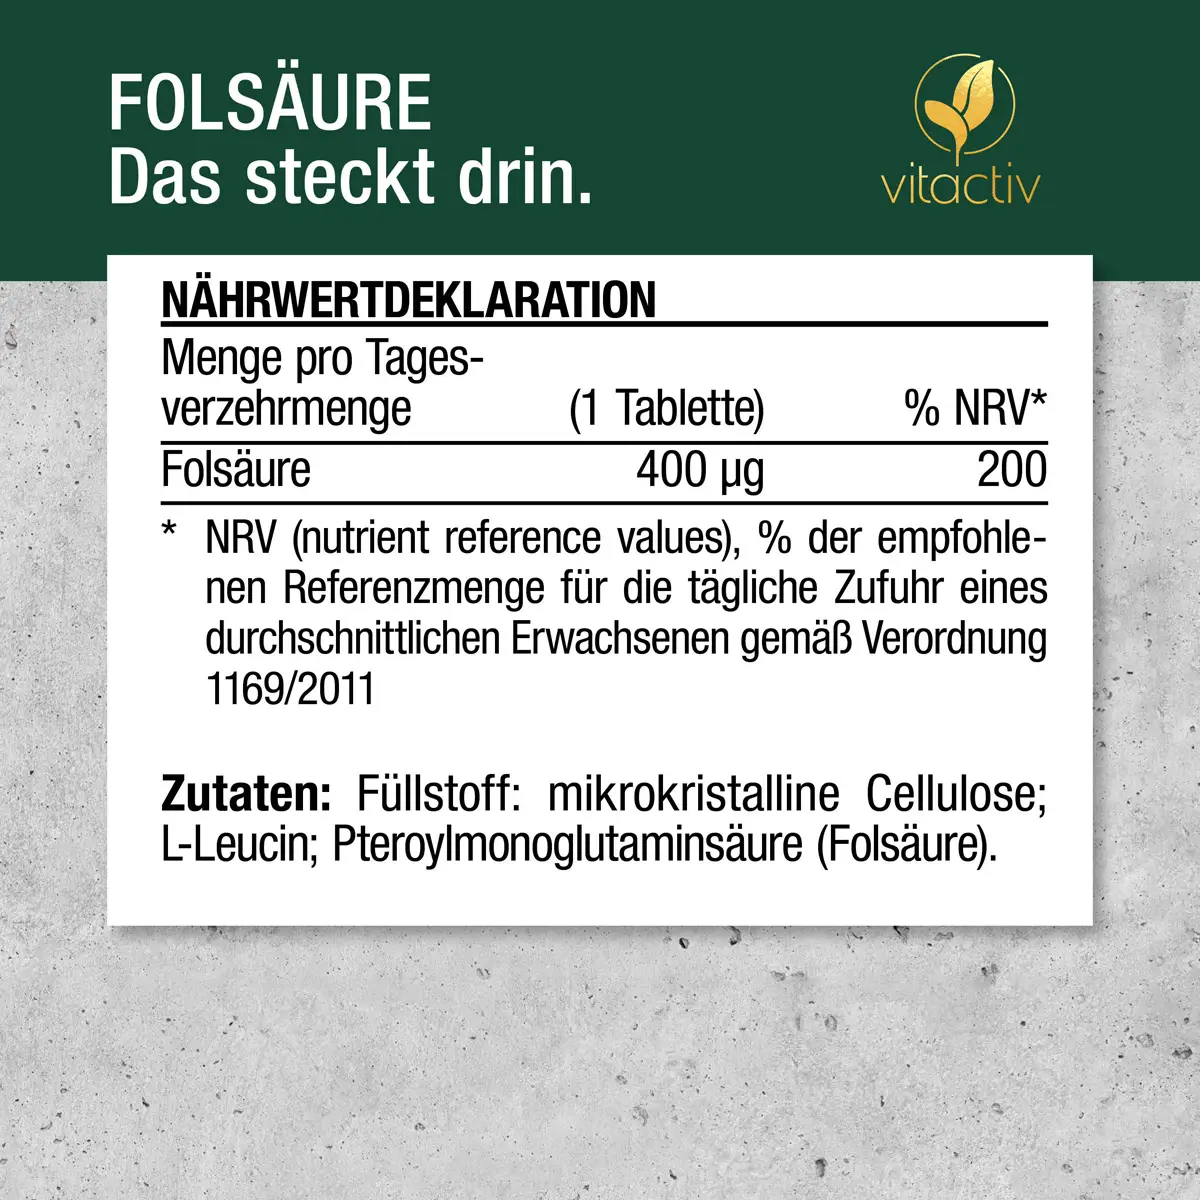 Nährwertdeklaration: 400 Mikrogramm Folsäure pro Tablette.